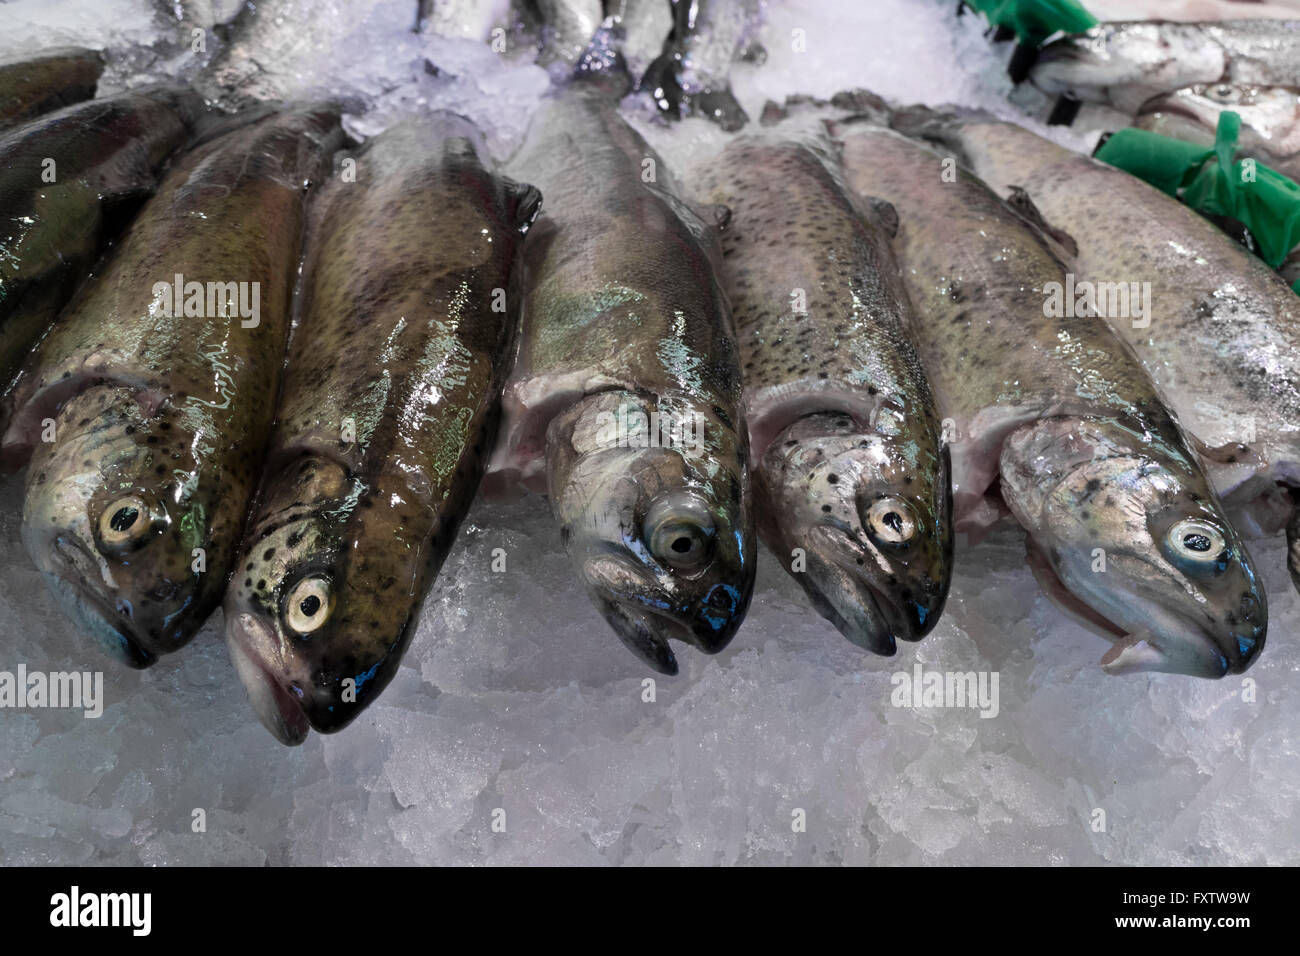 Matières premières fraîches poissons la truite sur la glace Banque D'Images